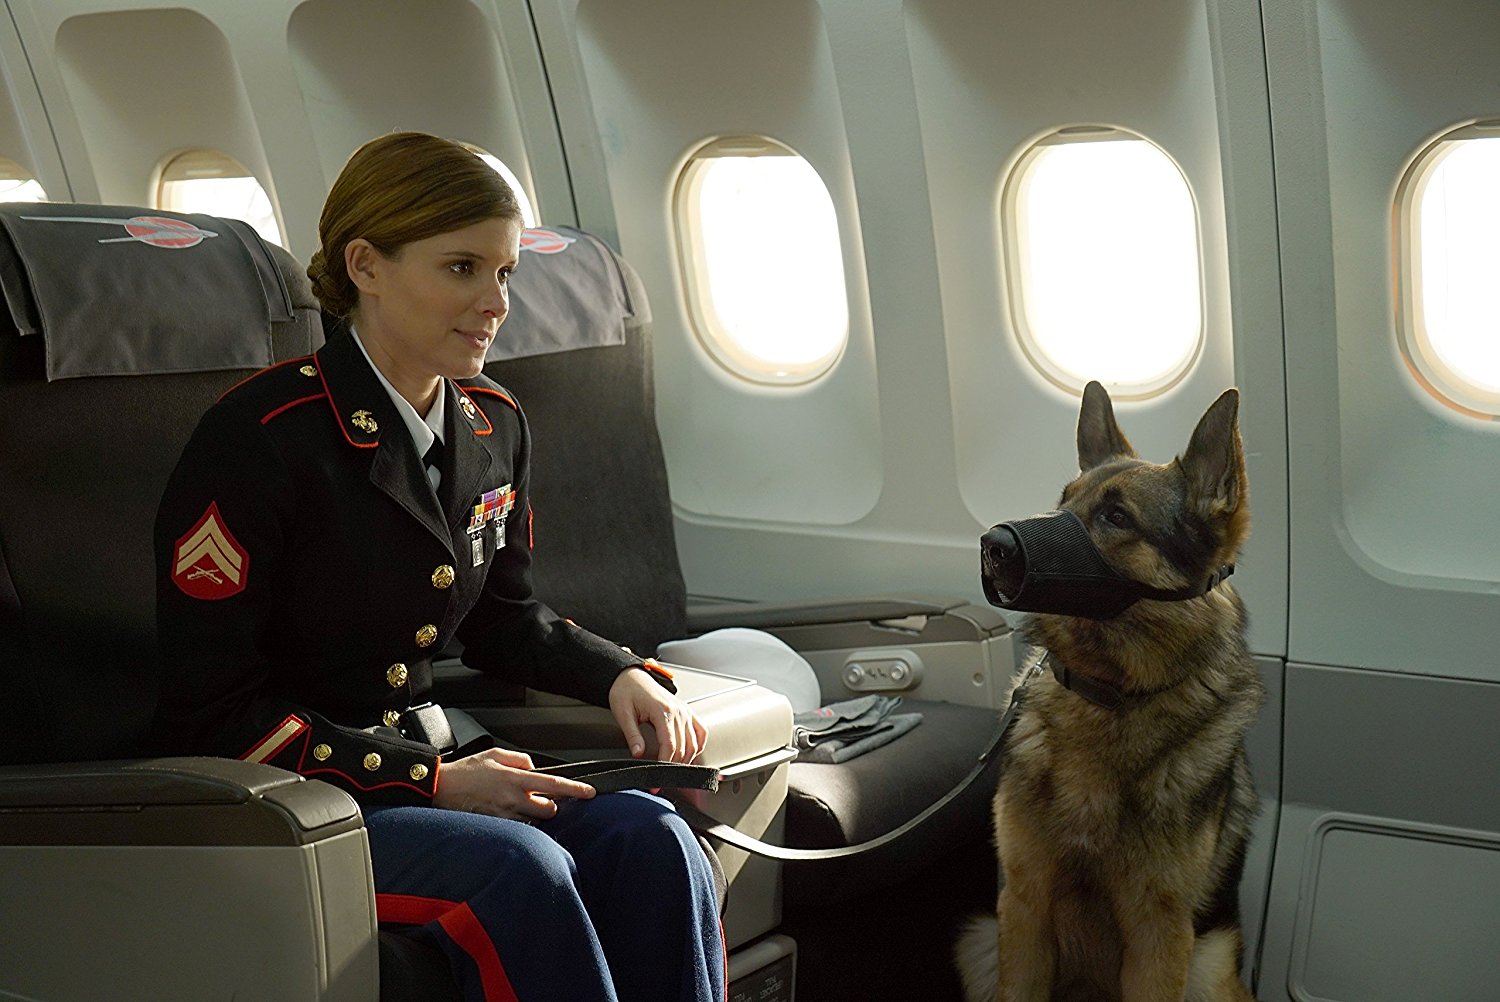 Sergeant Rex - Nicht ohne meinen Hund